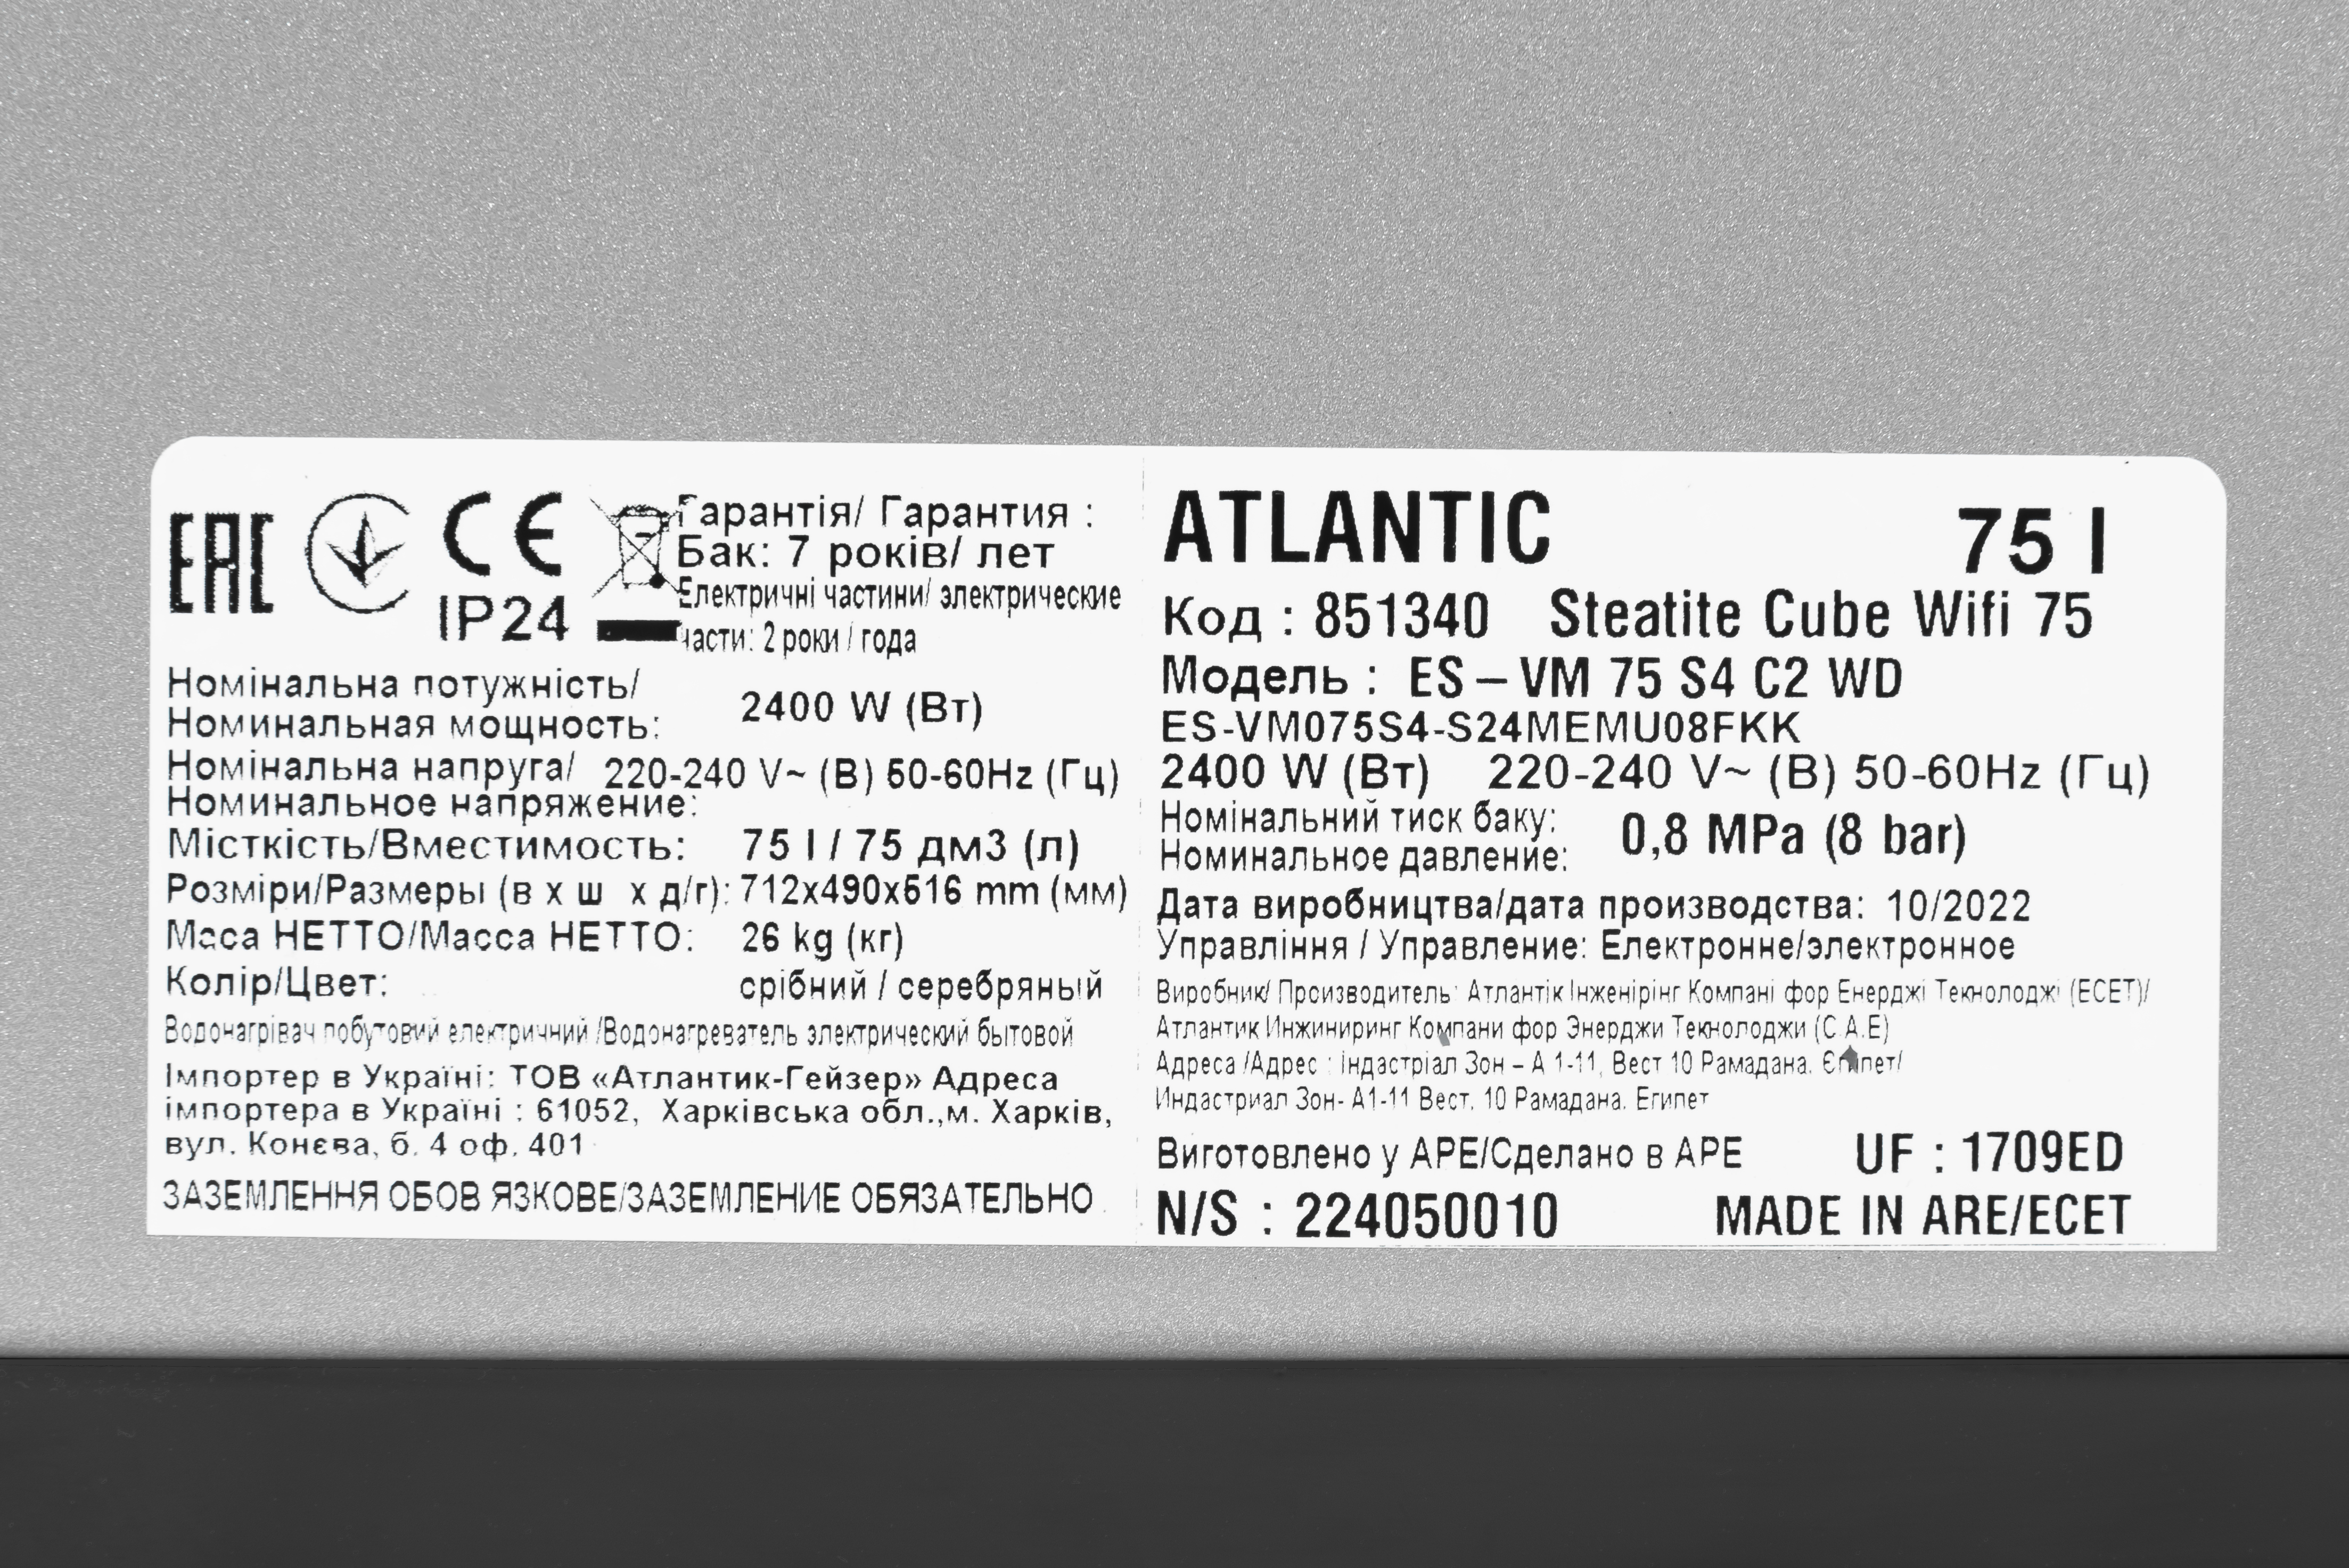 Водонагрівач Atlantic Steatite Cube WI-FI ES-VM 75 S4 C2 WD (2400W) silver відгуки - зображення 5